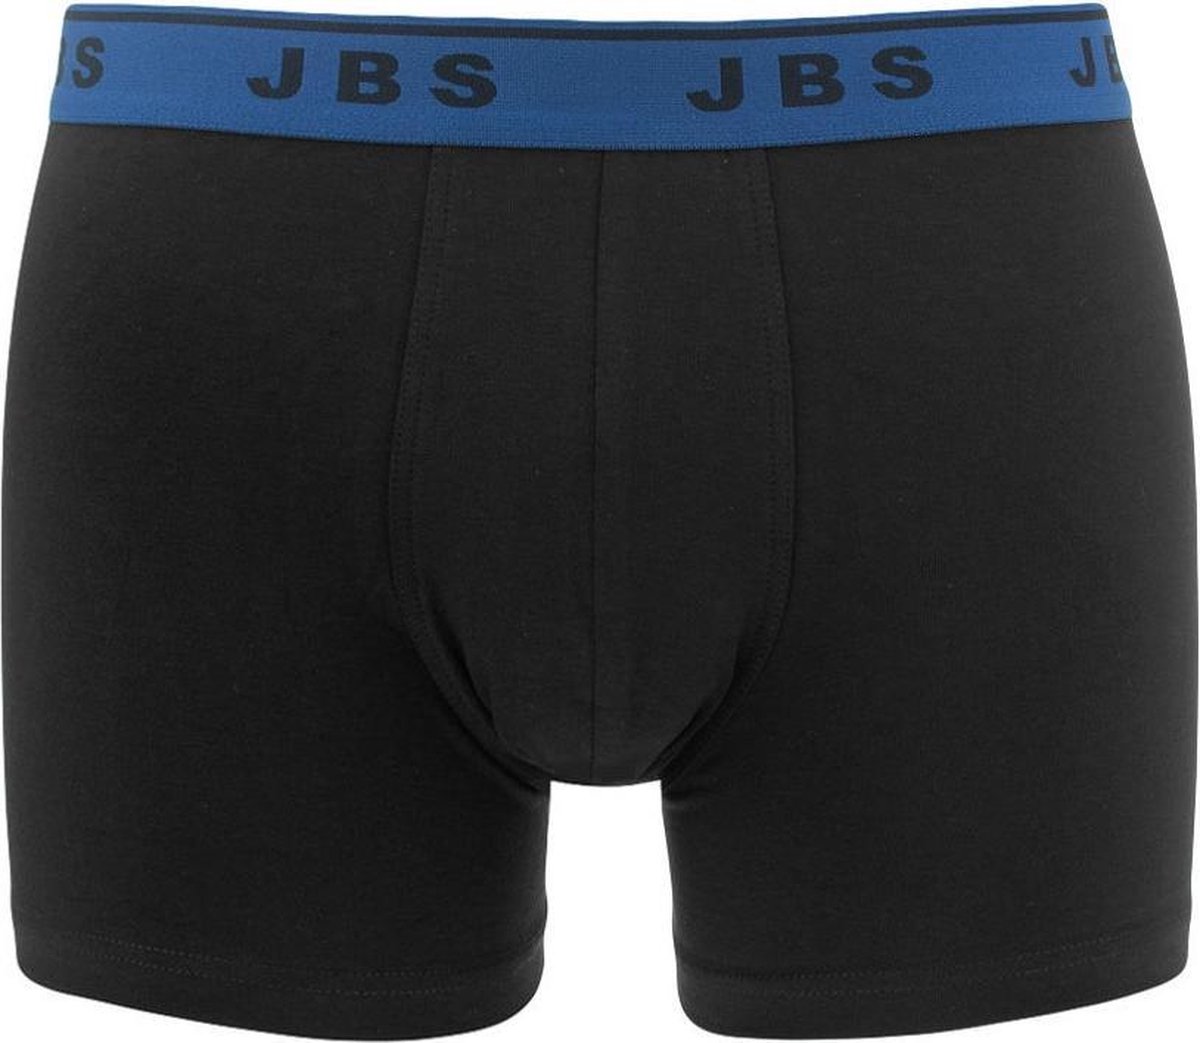 JBS - 3-pack boxershorts zwart combi - maat M